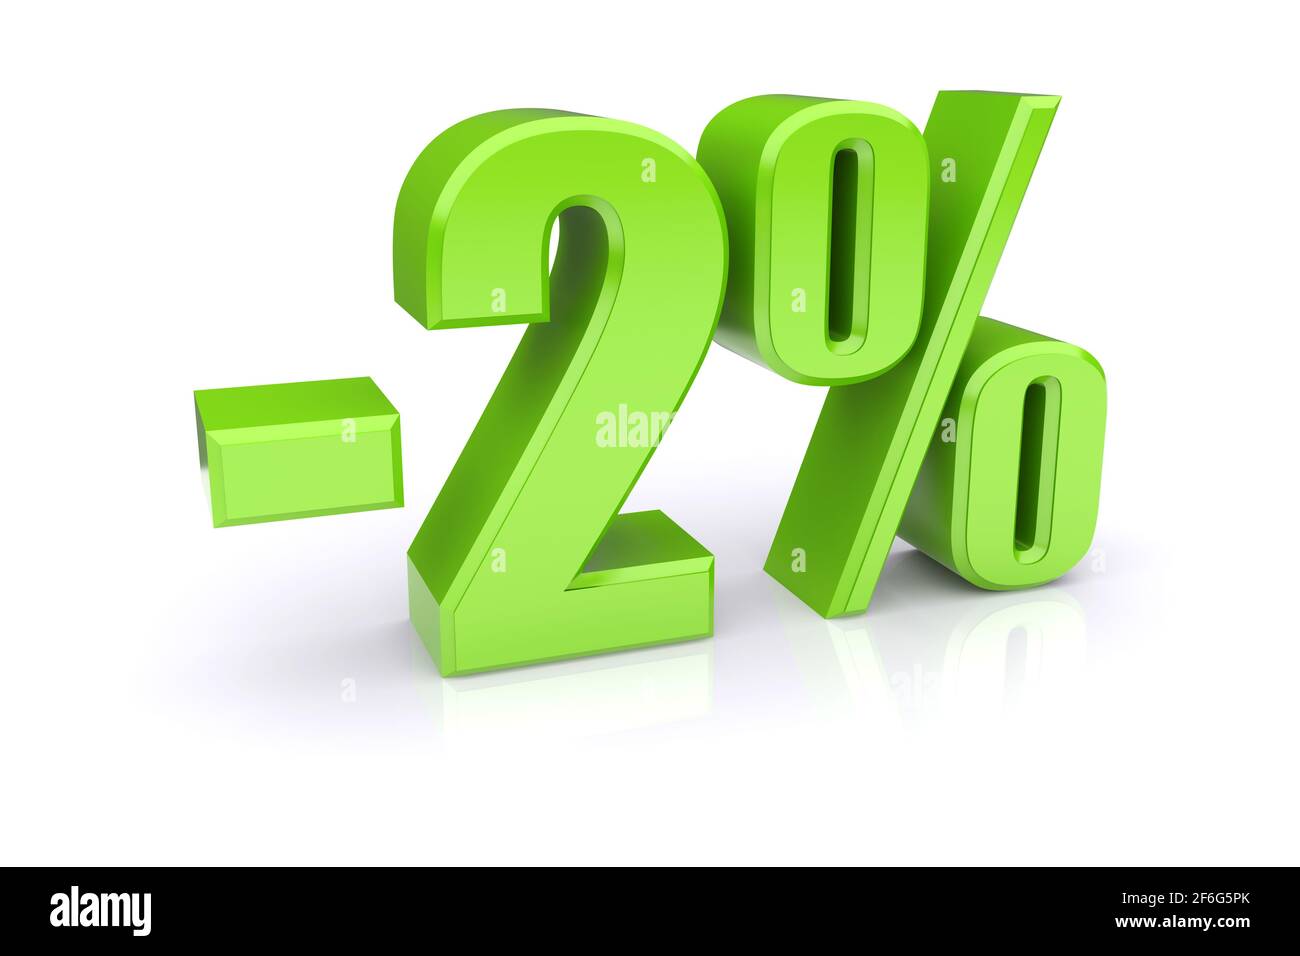 Icona verde del tasso percentuale del 2% su sfondo bianco. immagine 3d rappresentata Foto Stock